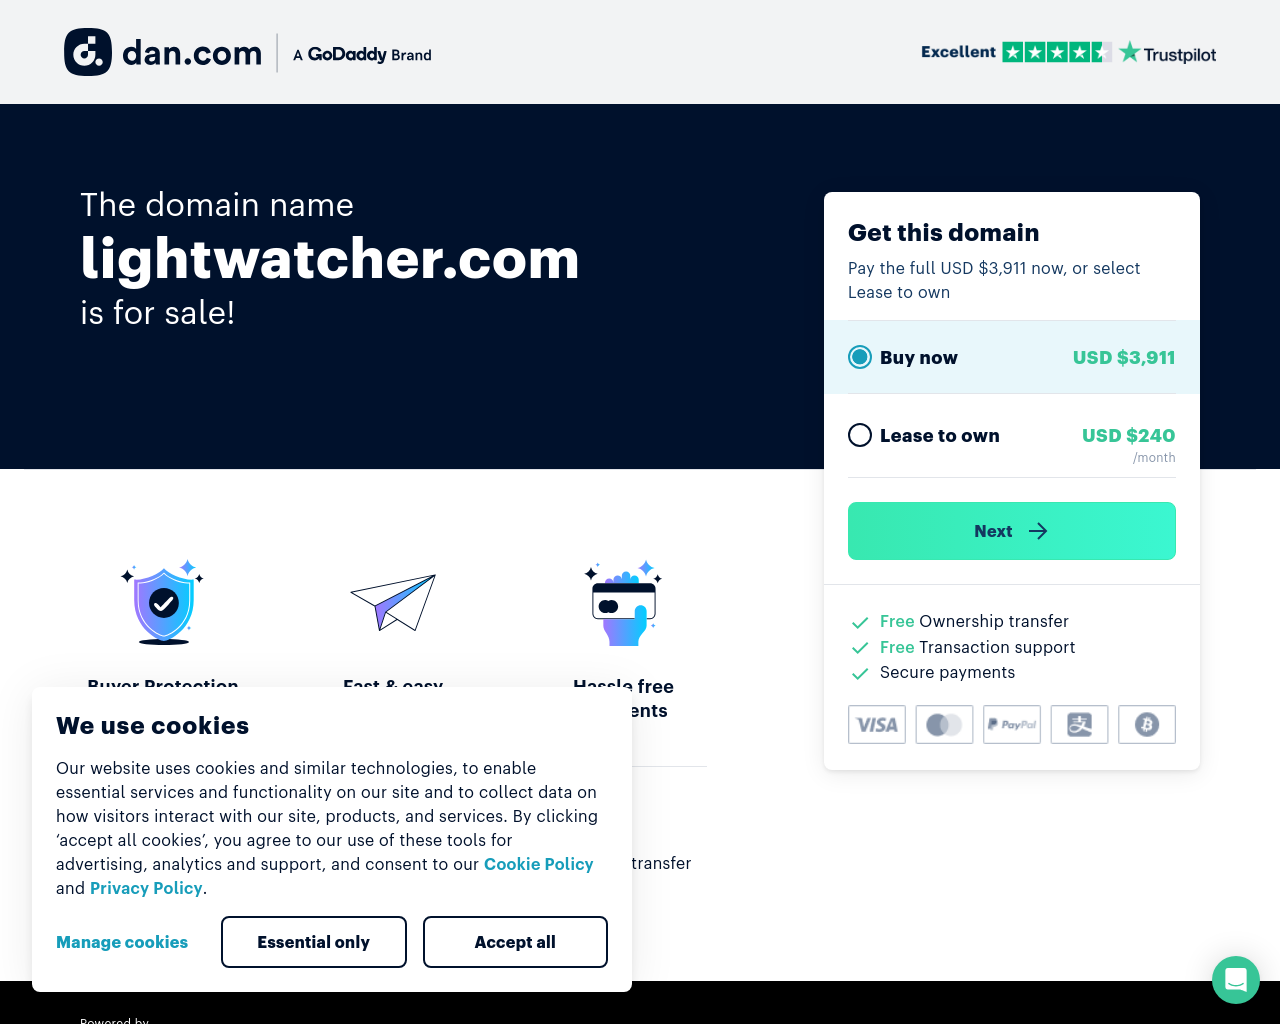 lightwatcher.com